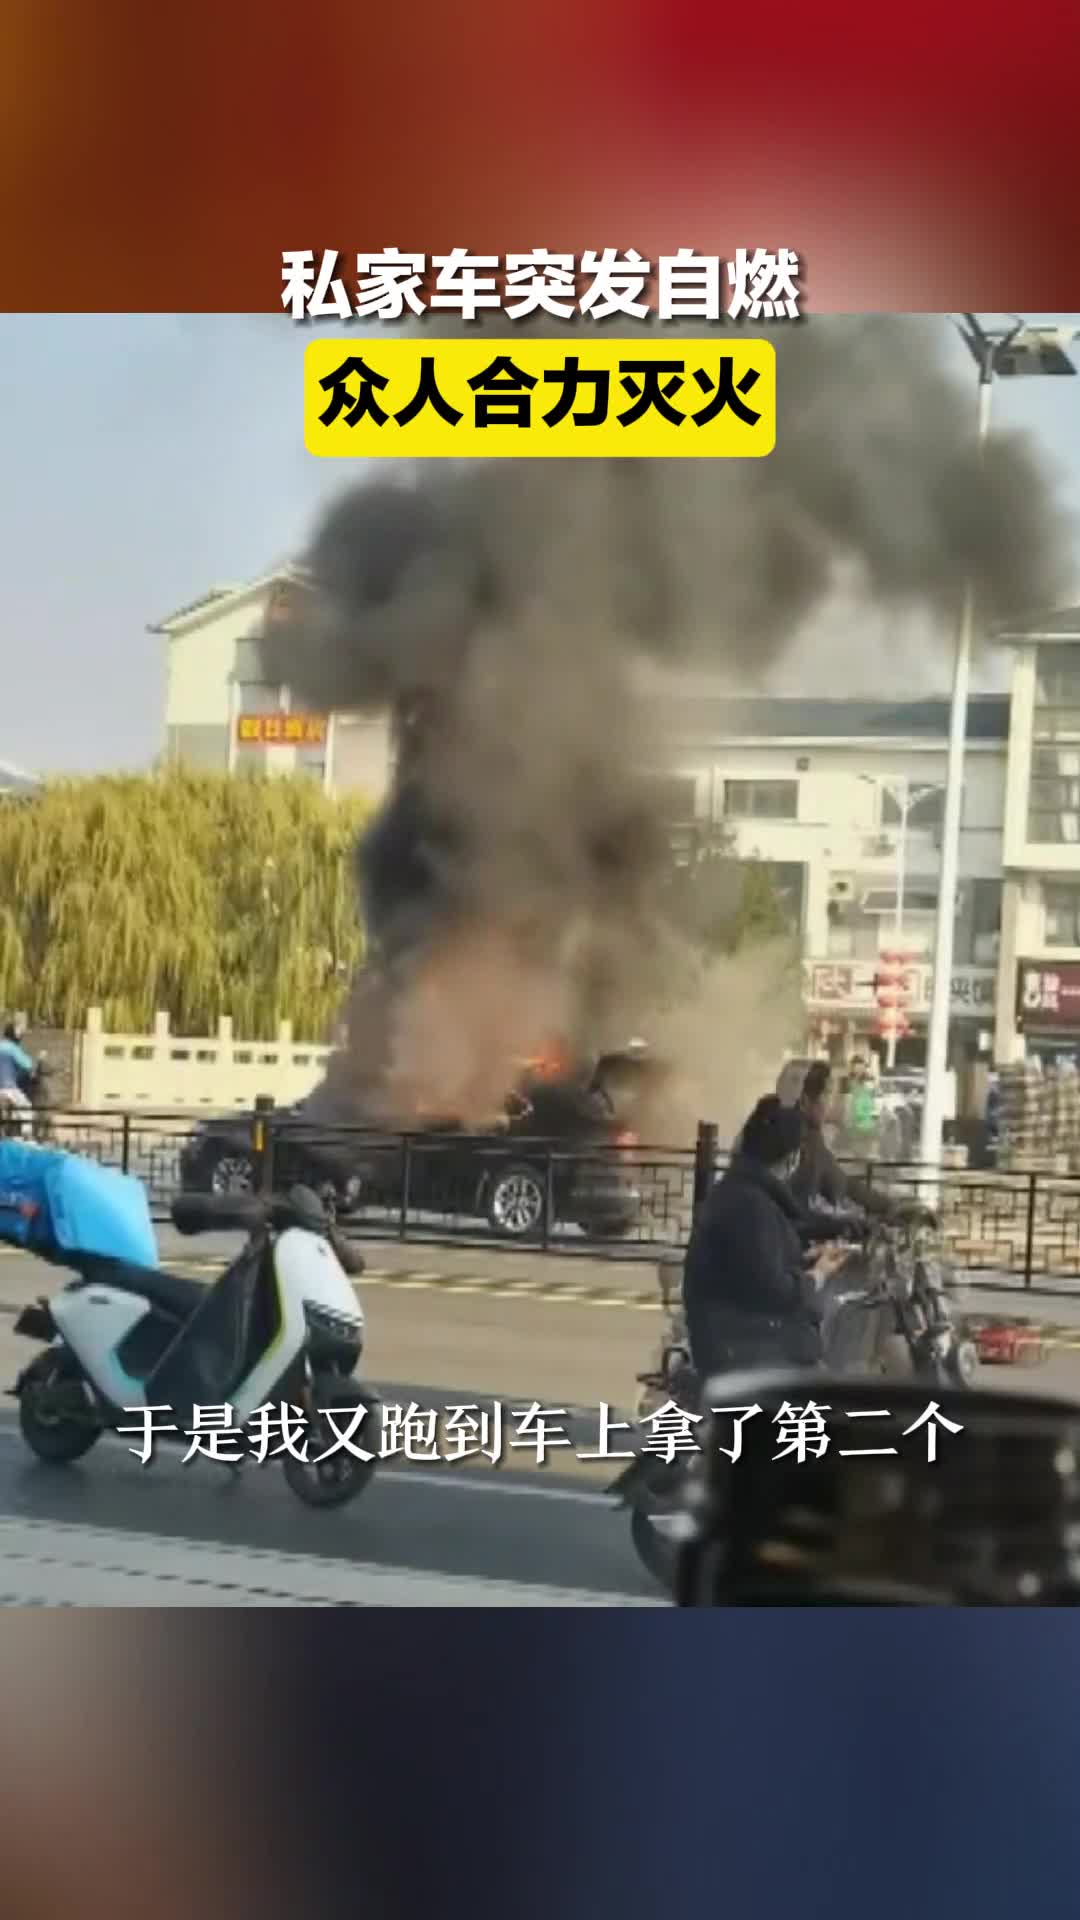 青州一私家车突发自燃 众人合力灭火